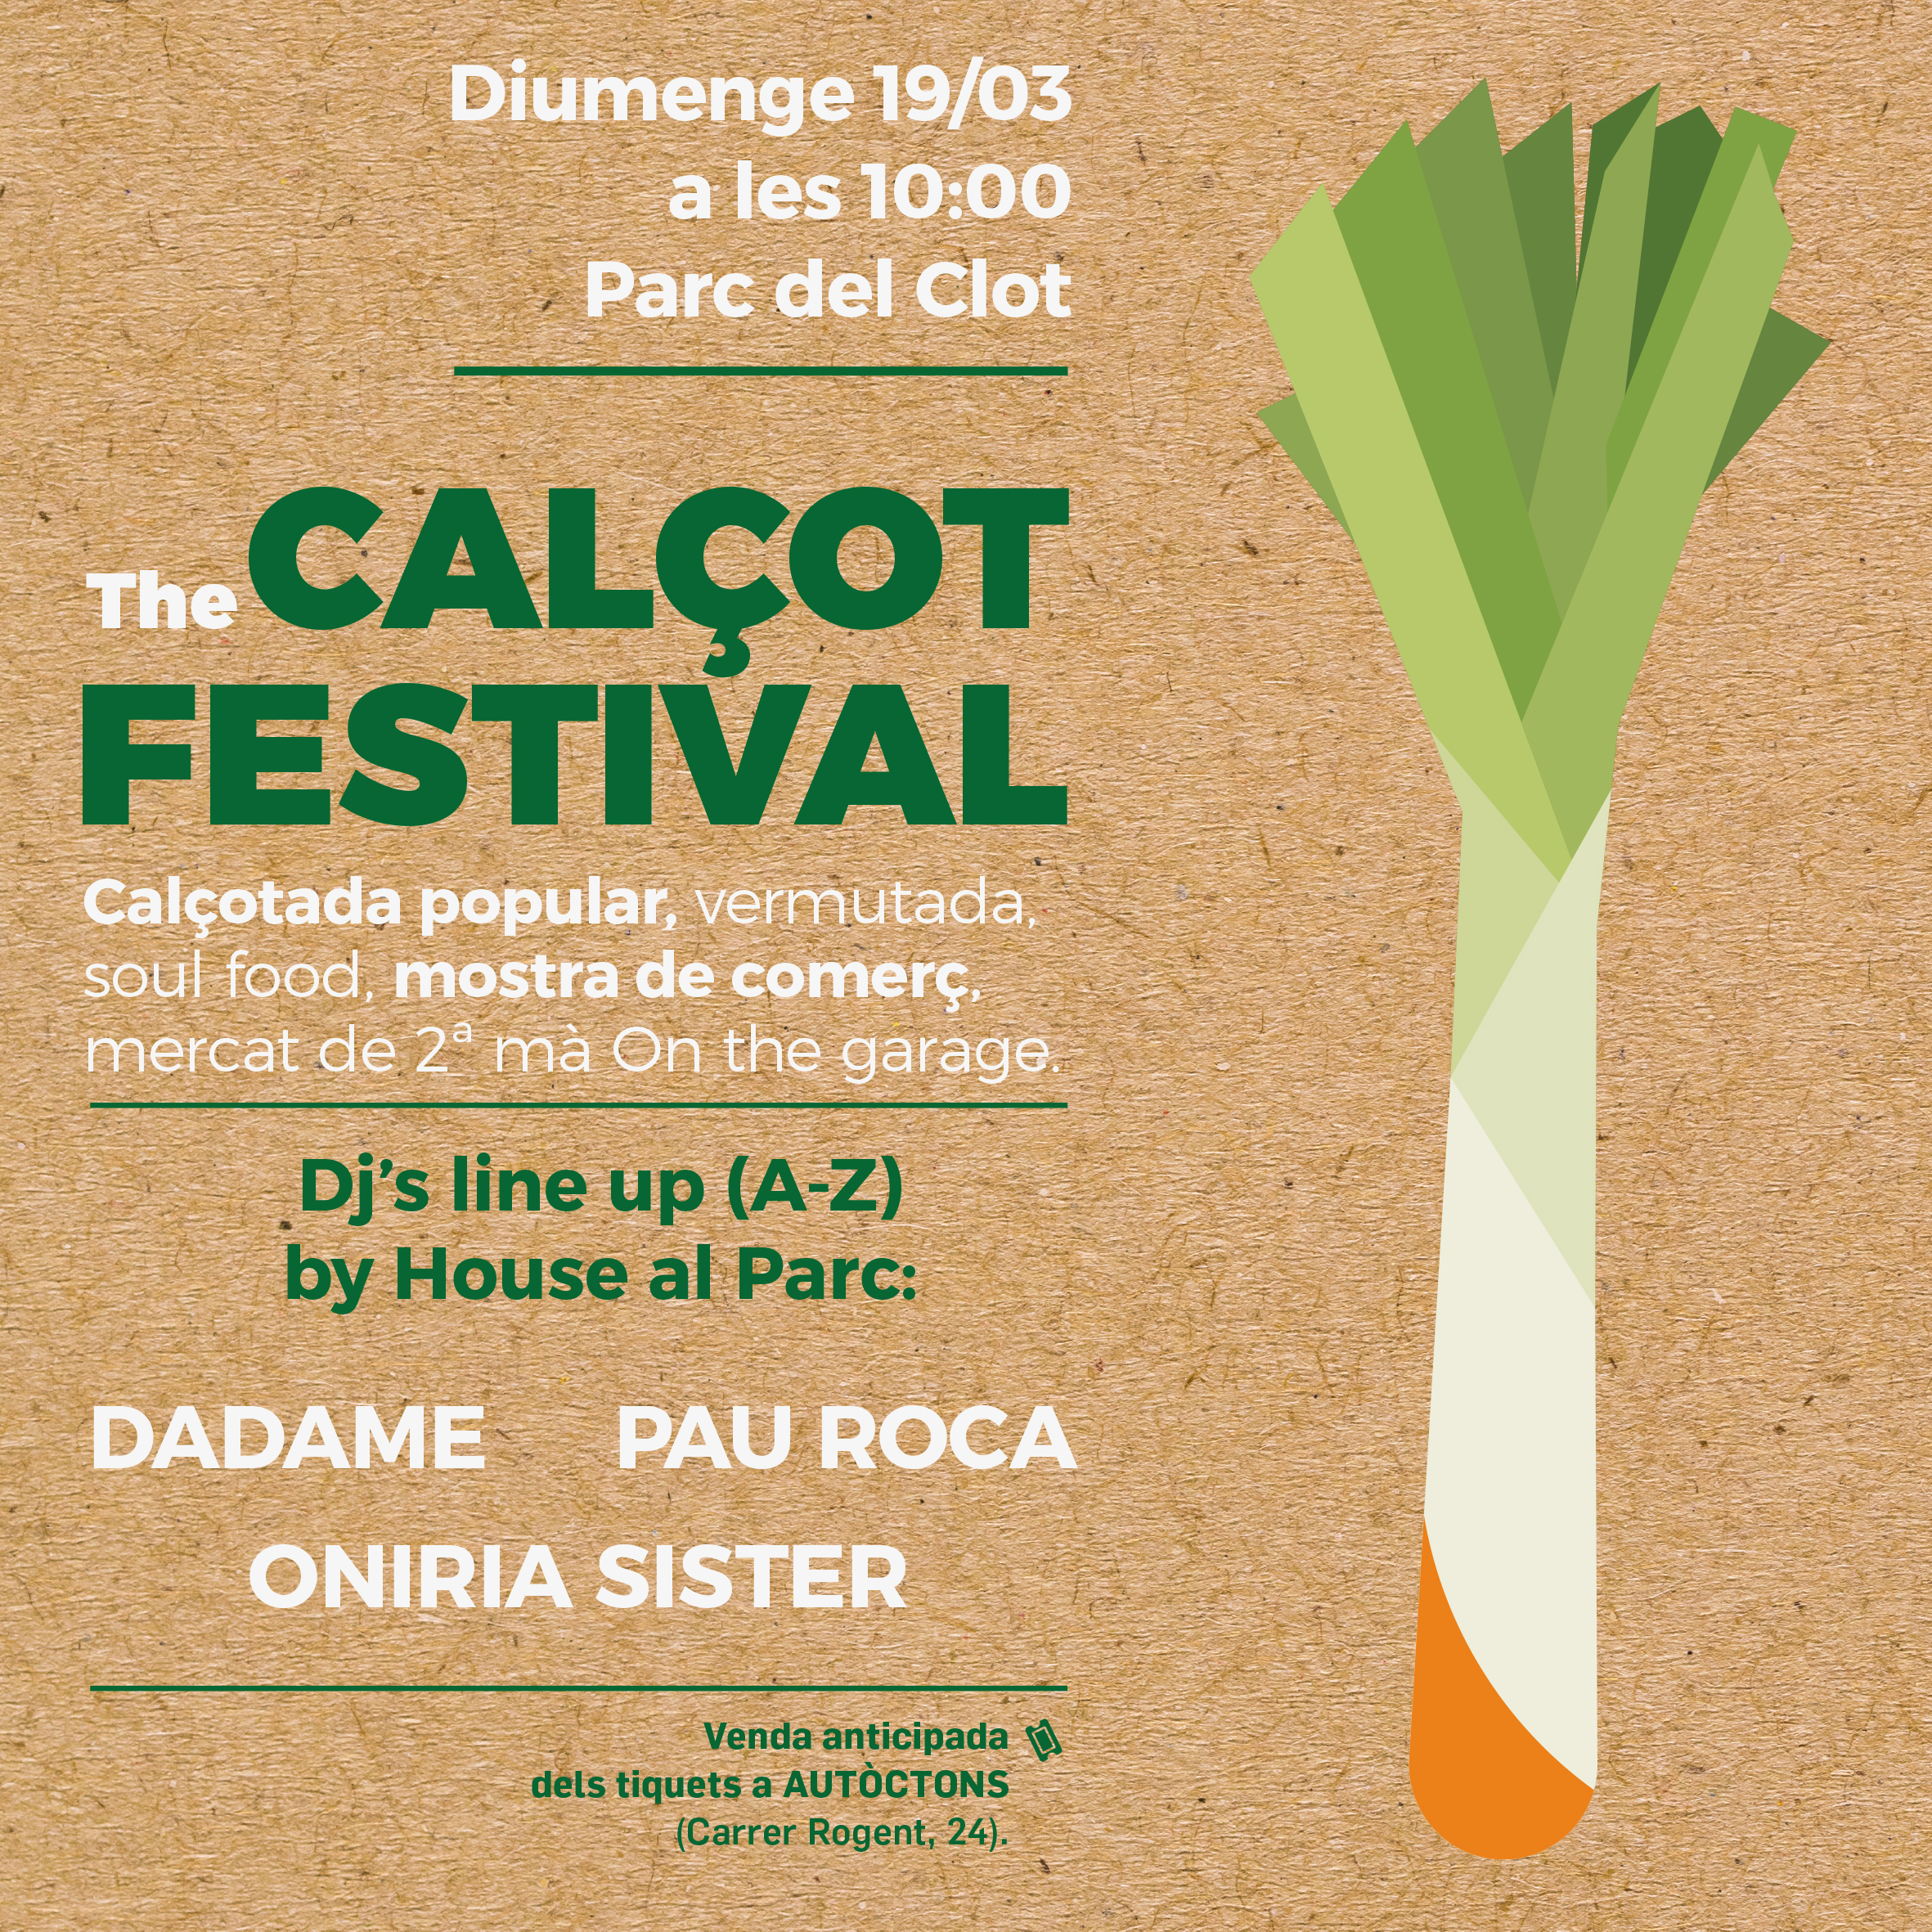 The Calçot Festival